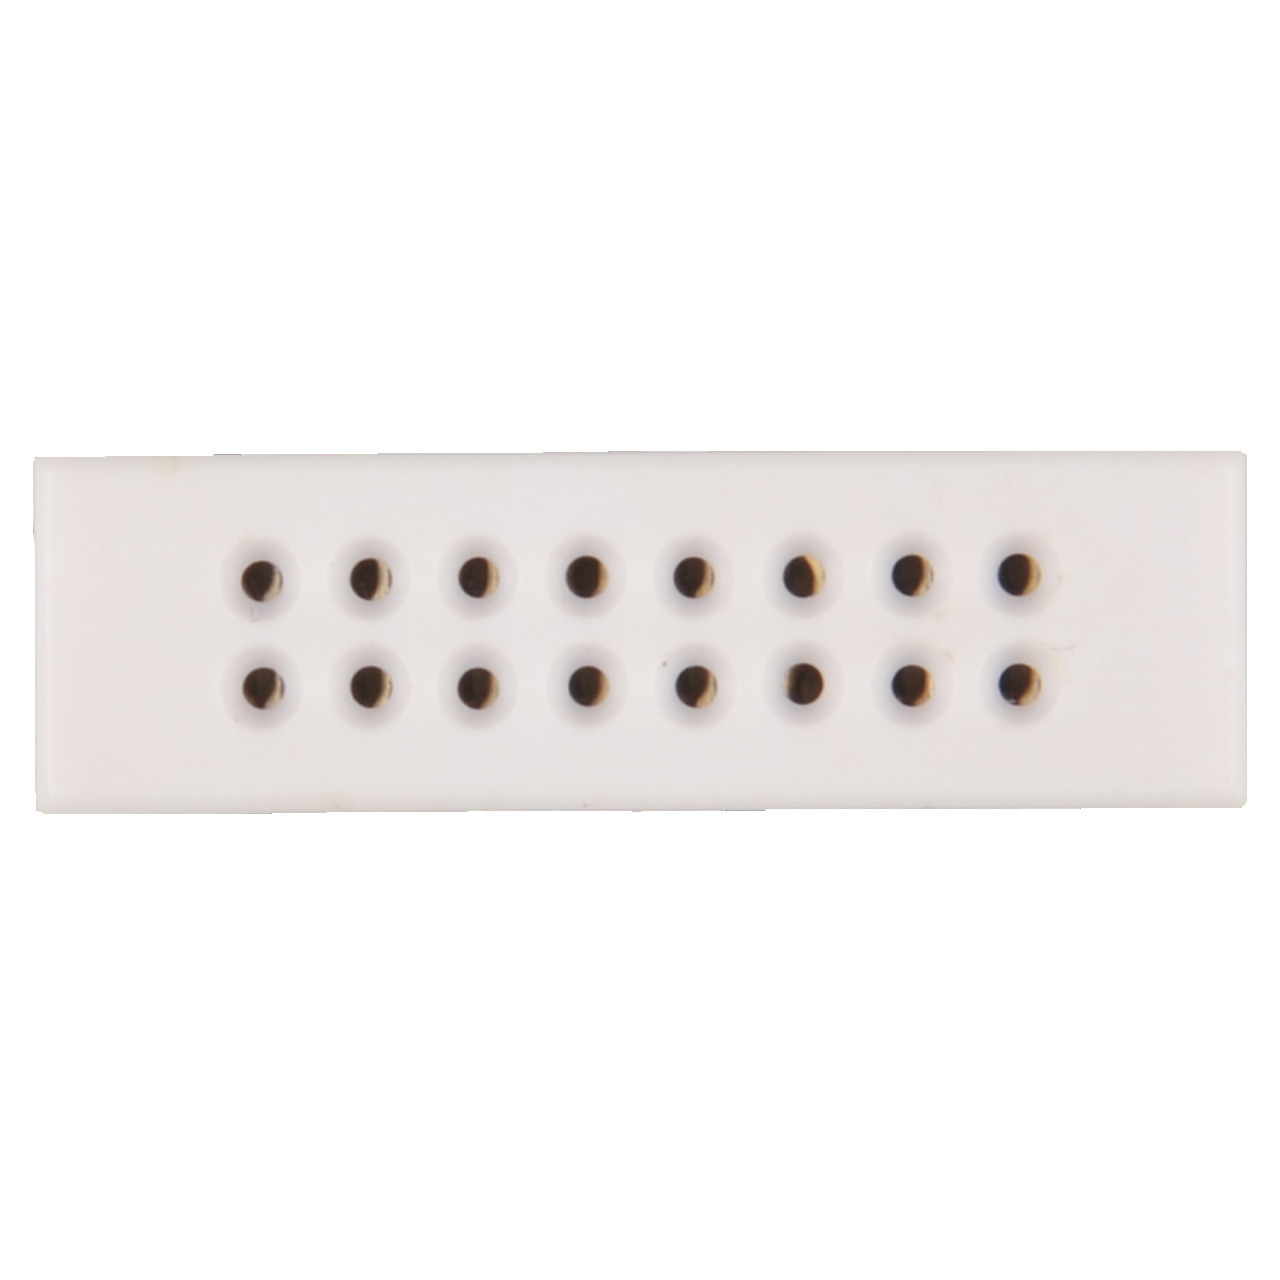 ELV Mini-Steckplatine-Breadboard mit Lötanschluss- 2 x 8 Kontakte (Buchsen)